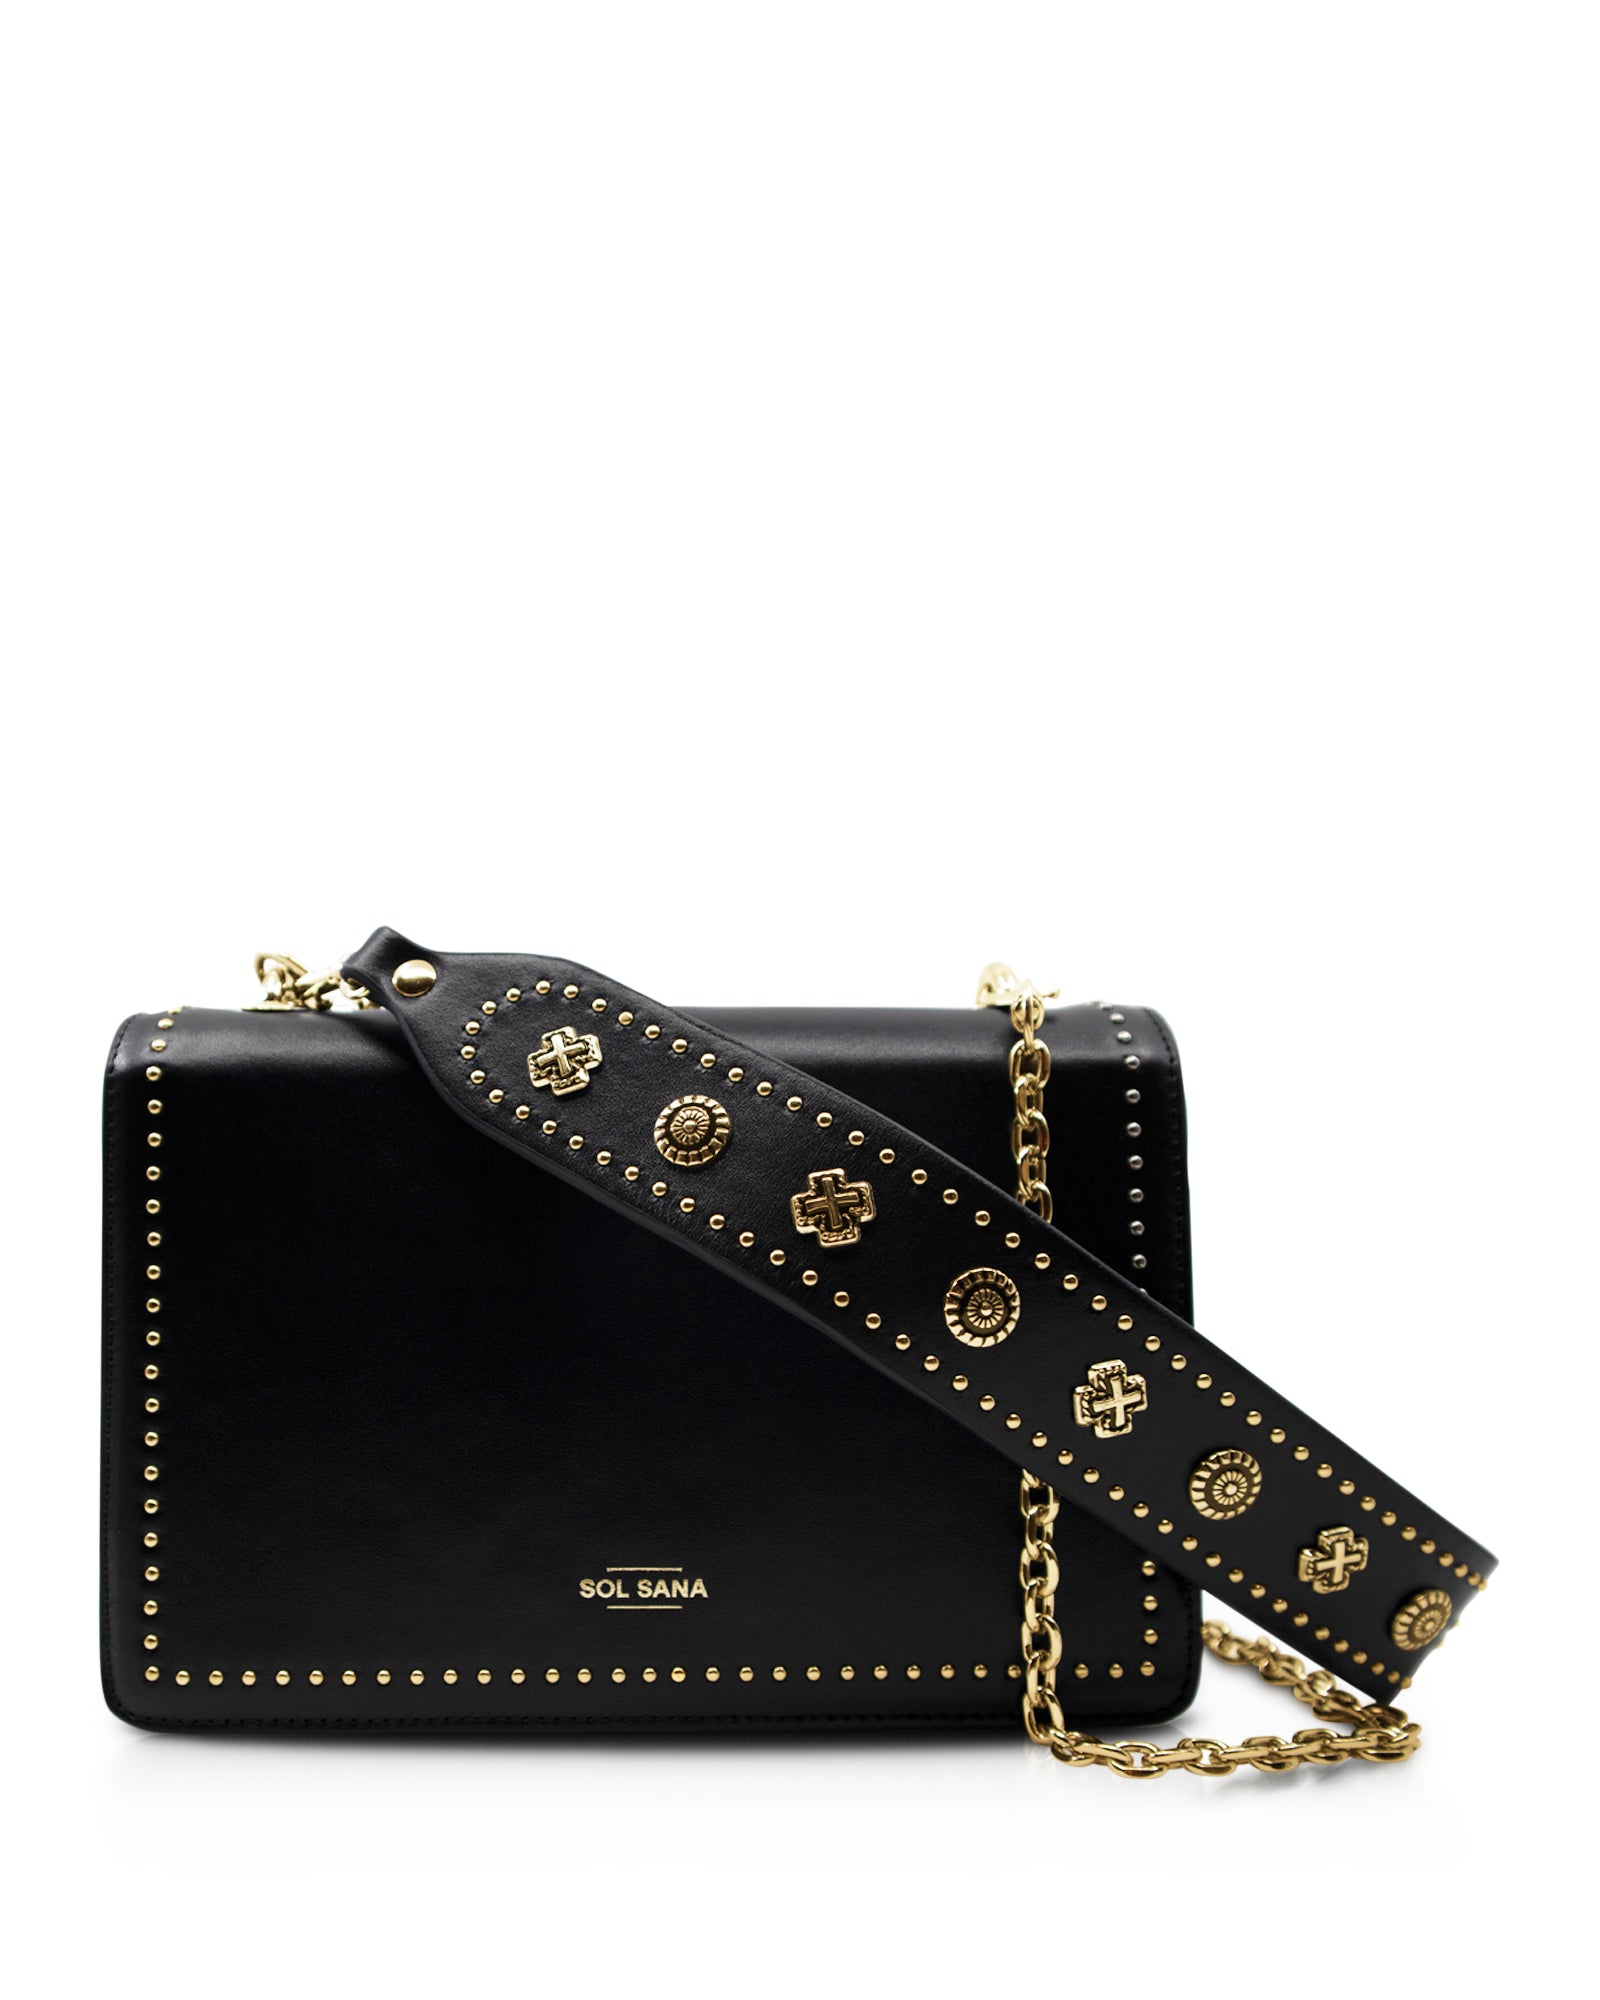 Leather Flap Bag Studded - Black / Gold